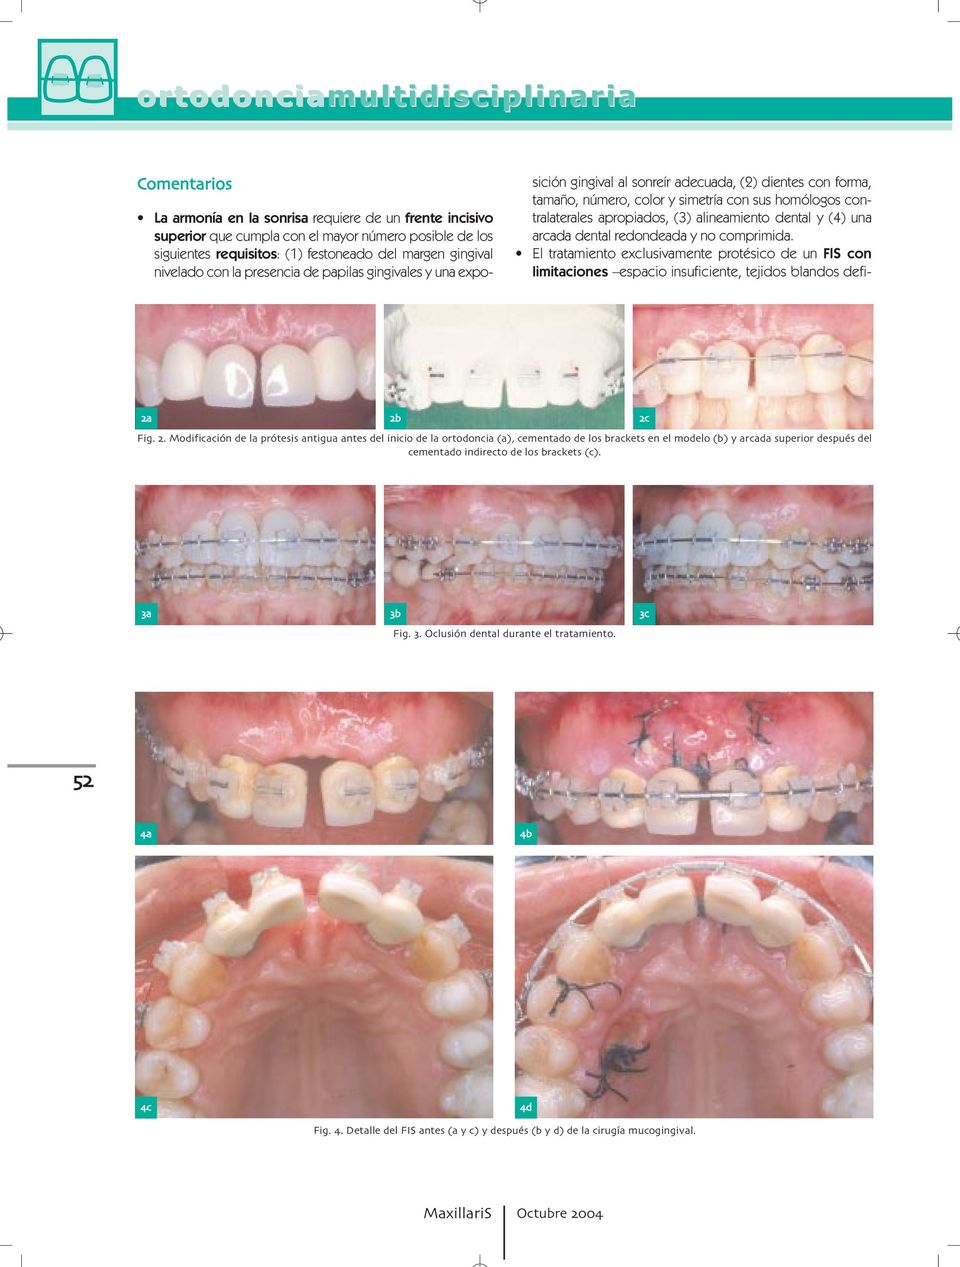 dental y (4) una arcada dental redondeada y no comprimida. El tratamiento exclusivamente protésico de un FIS con limitaciones espacio insuficiente, tejidos blandos defi- c Fig.